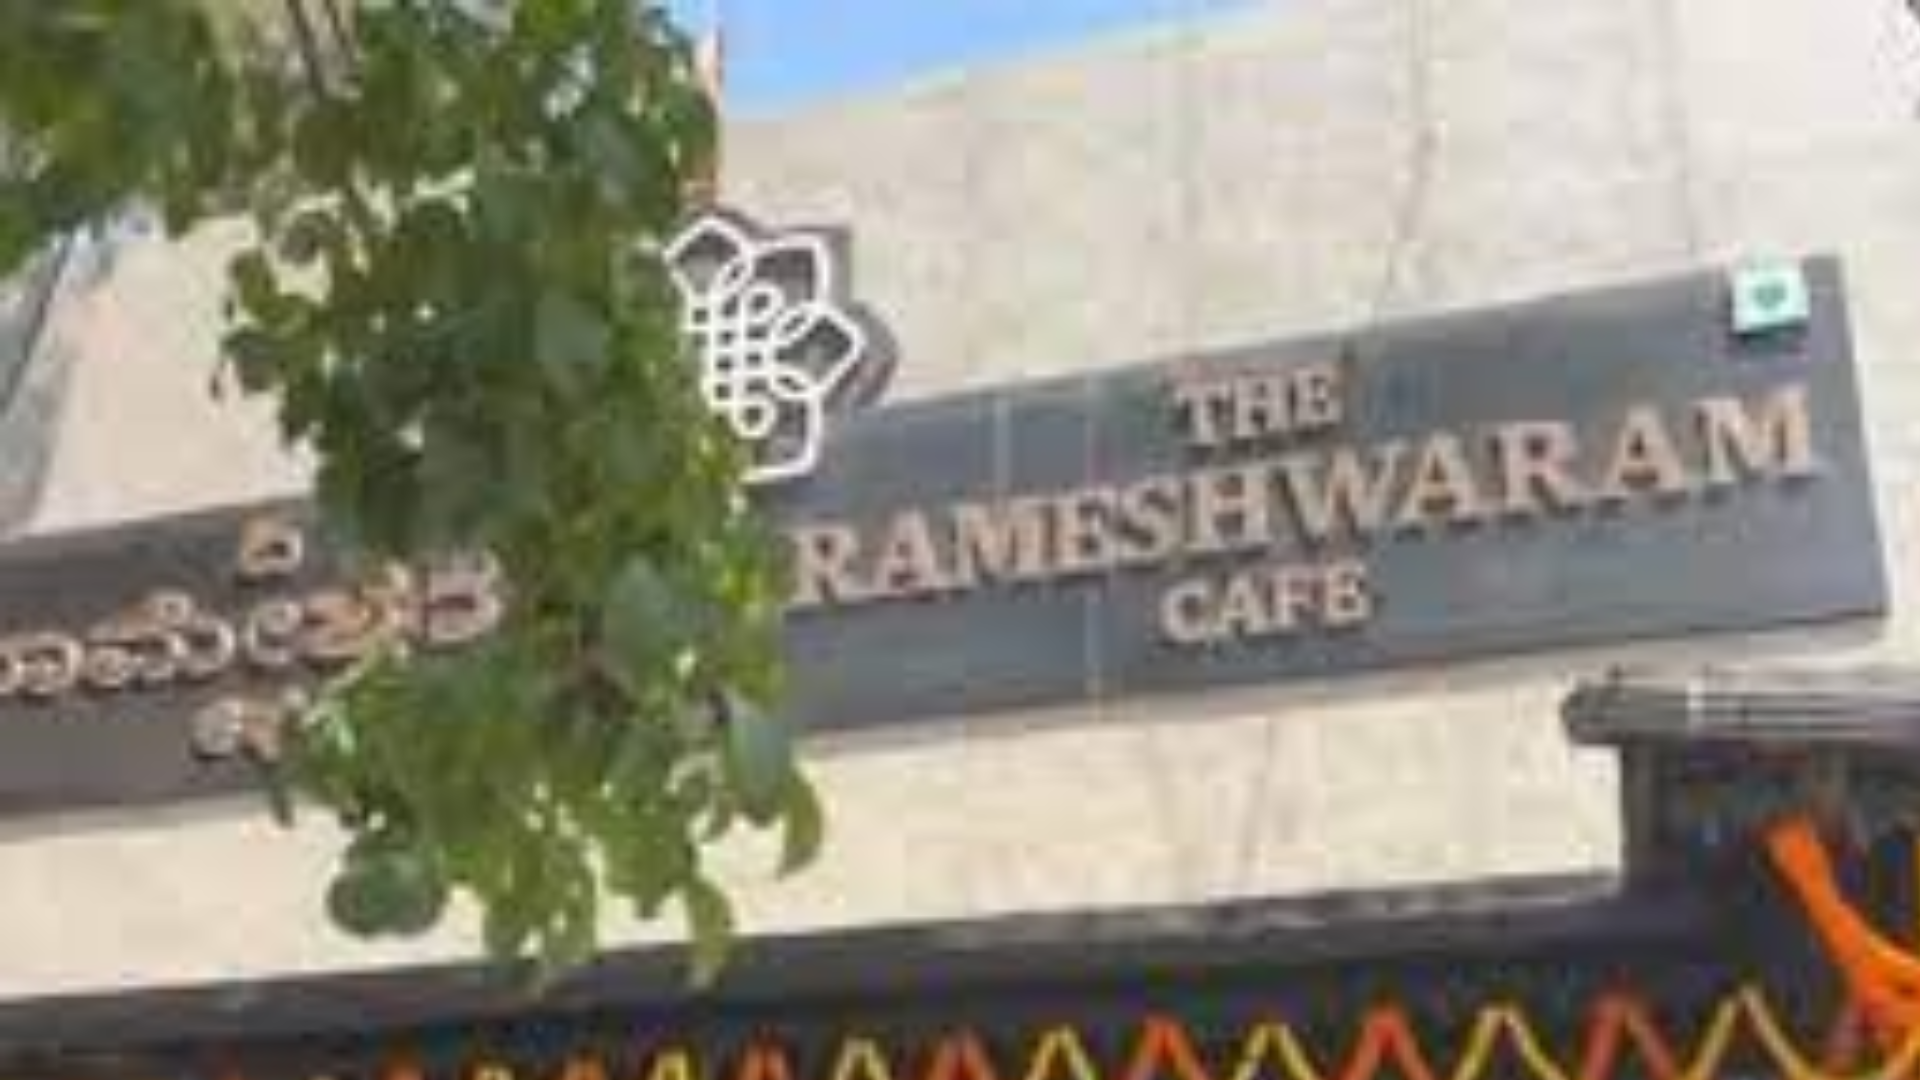 Bengaluru’s Rameshwaram Cafe blast: 9 people injured, probe on